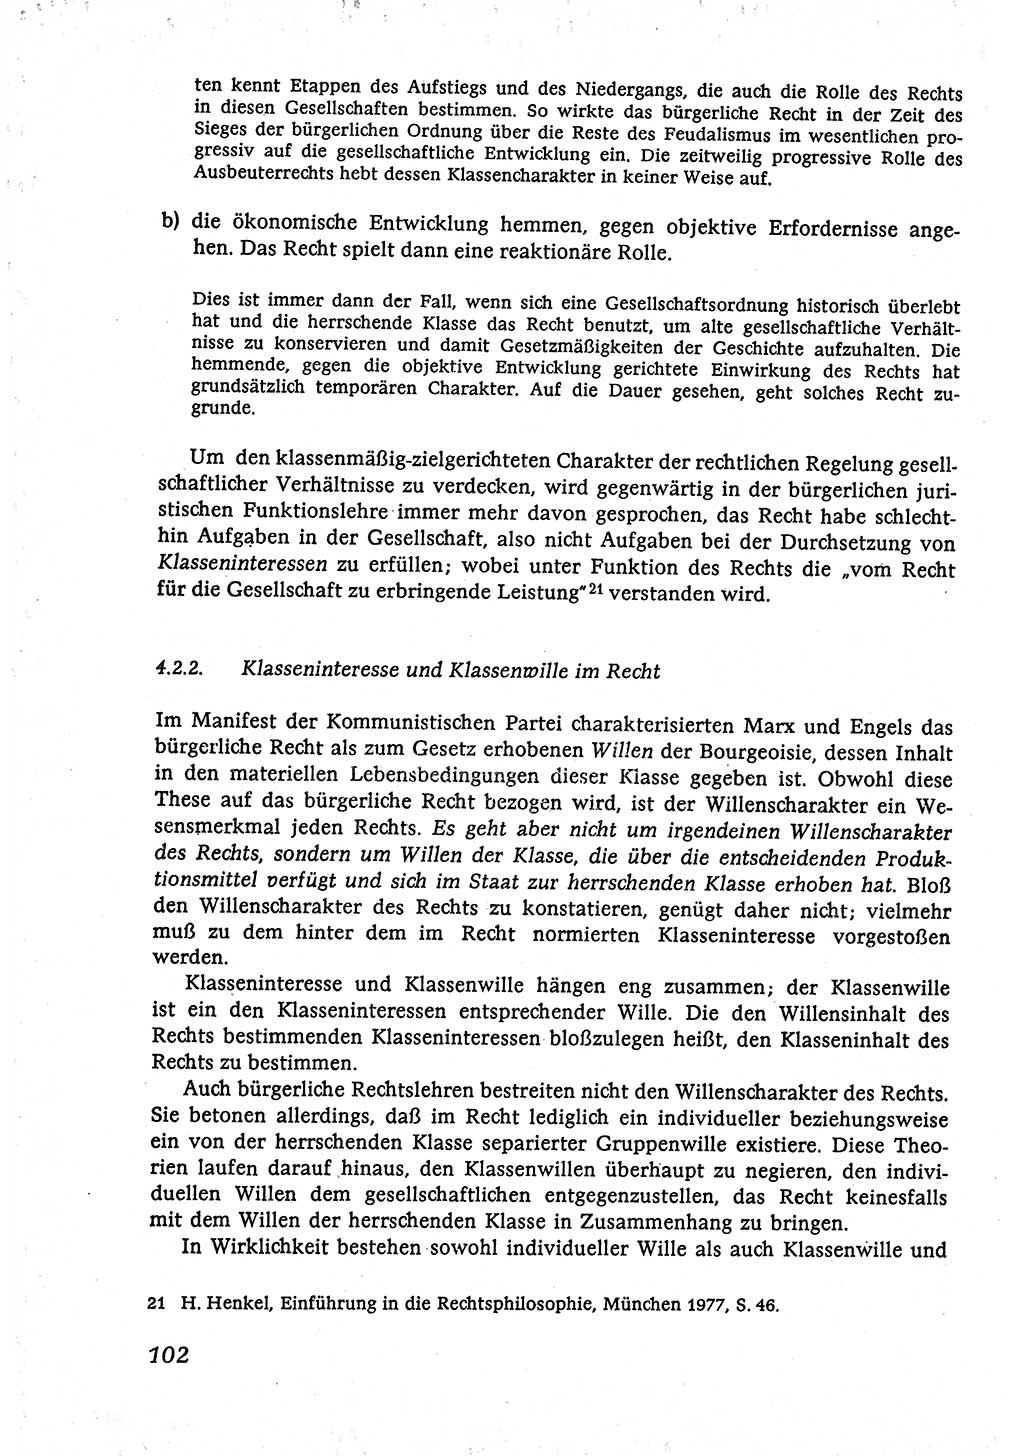 Marxistisch-leninistische (ML) Staats- und Rechtstheorie [Deutsche Demokratische Republik (DDR)], Lehrbuch 1980, Seite 102 (ML St.-R.-Th. DDR Lb. 1980, S. 102)